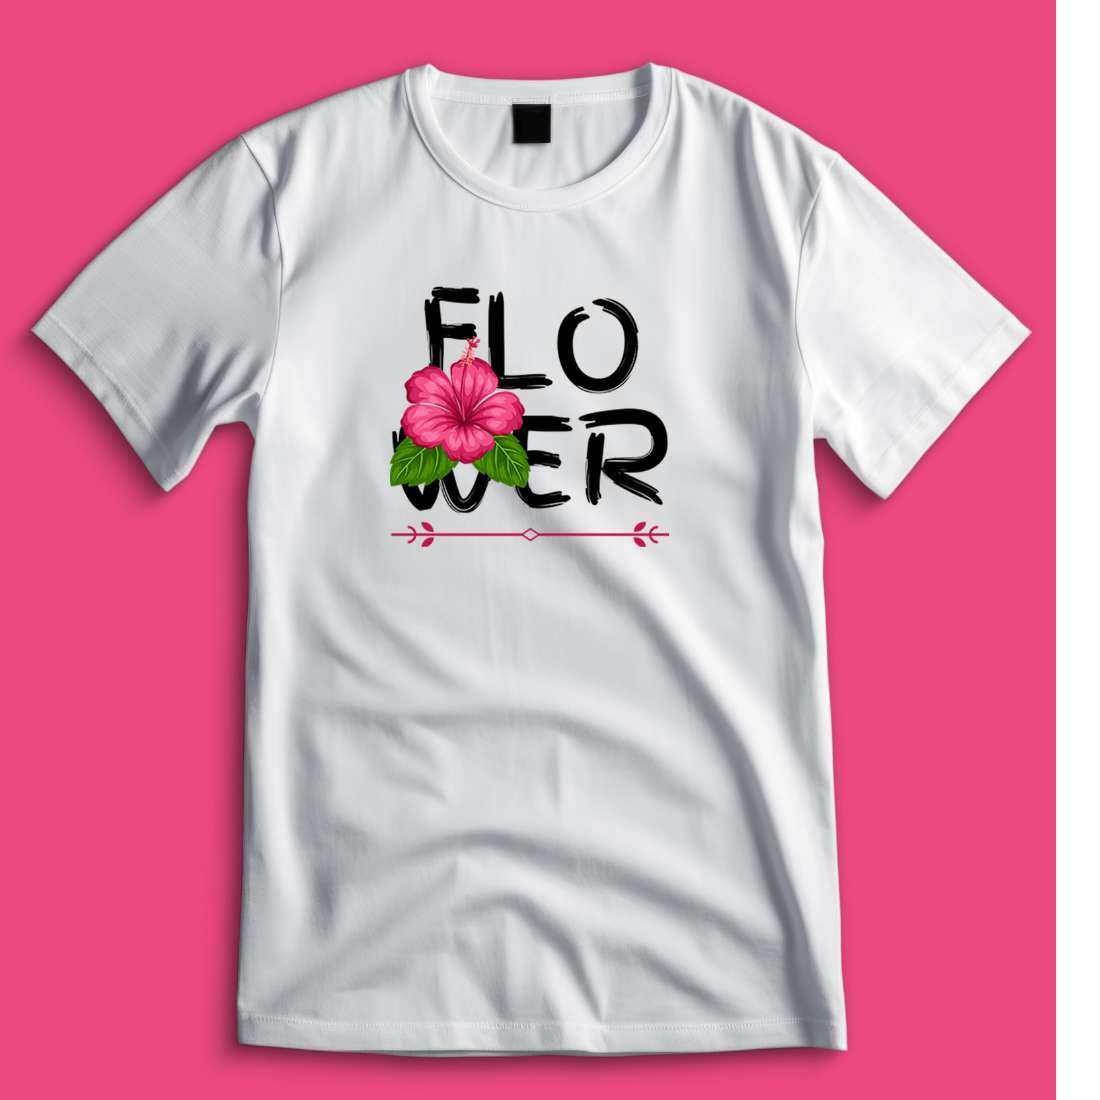 T-shirt, T-shirt design, Flower, Flower T-shirt New design, pinterest preview image.